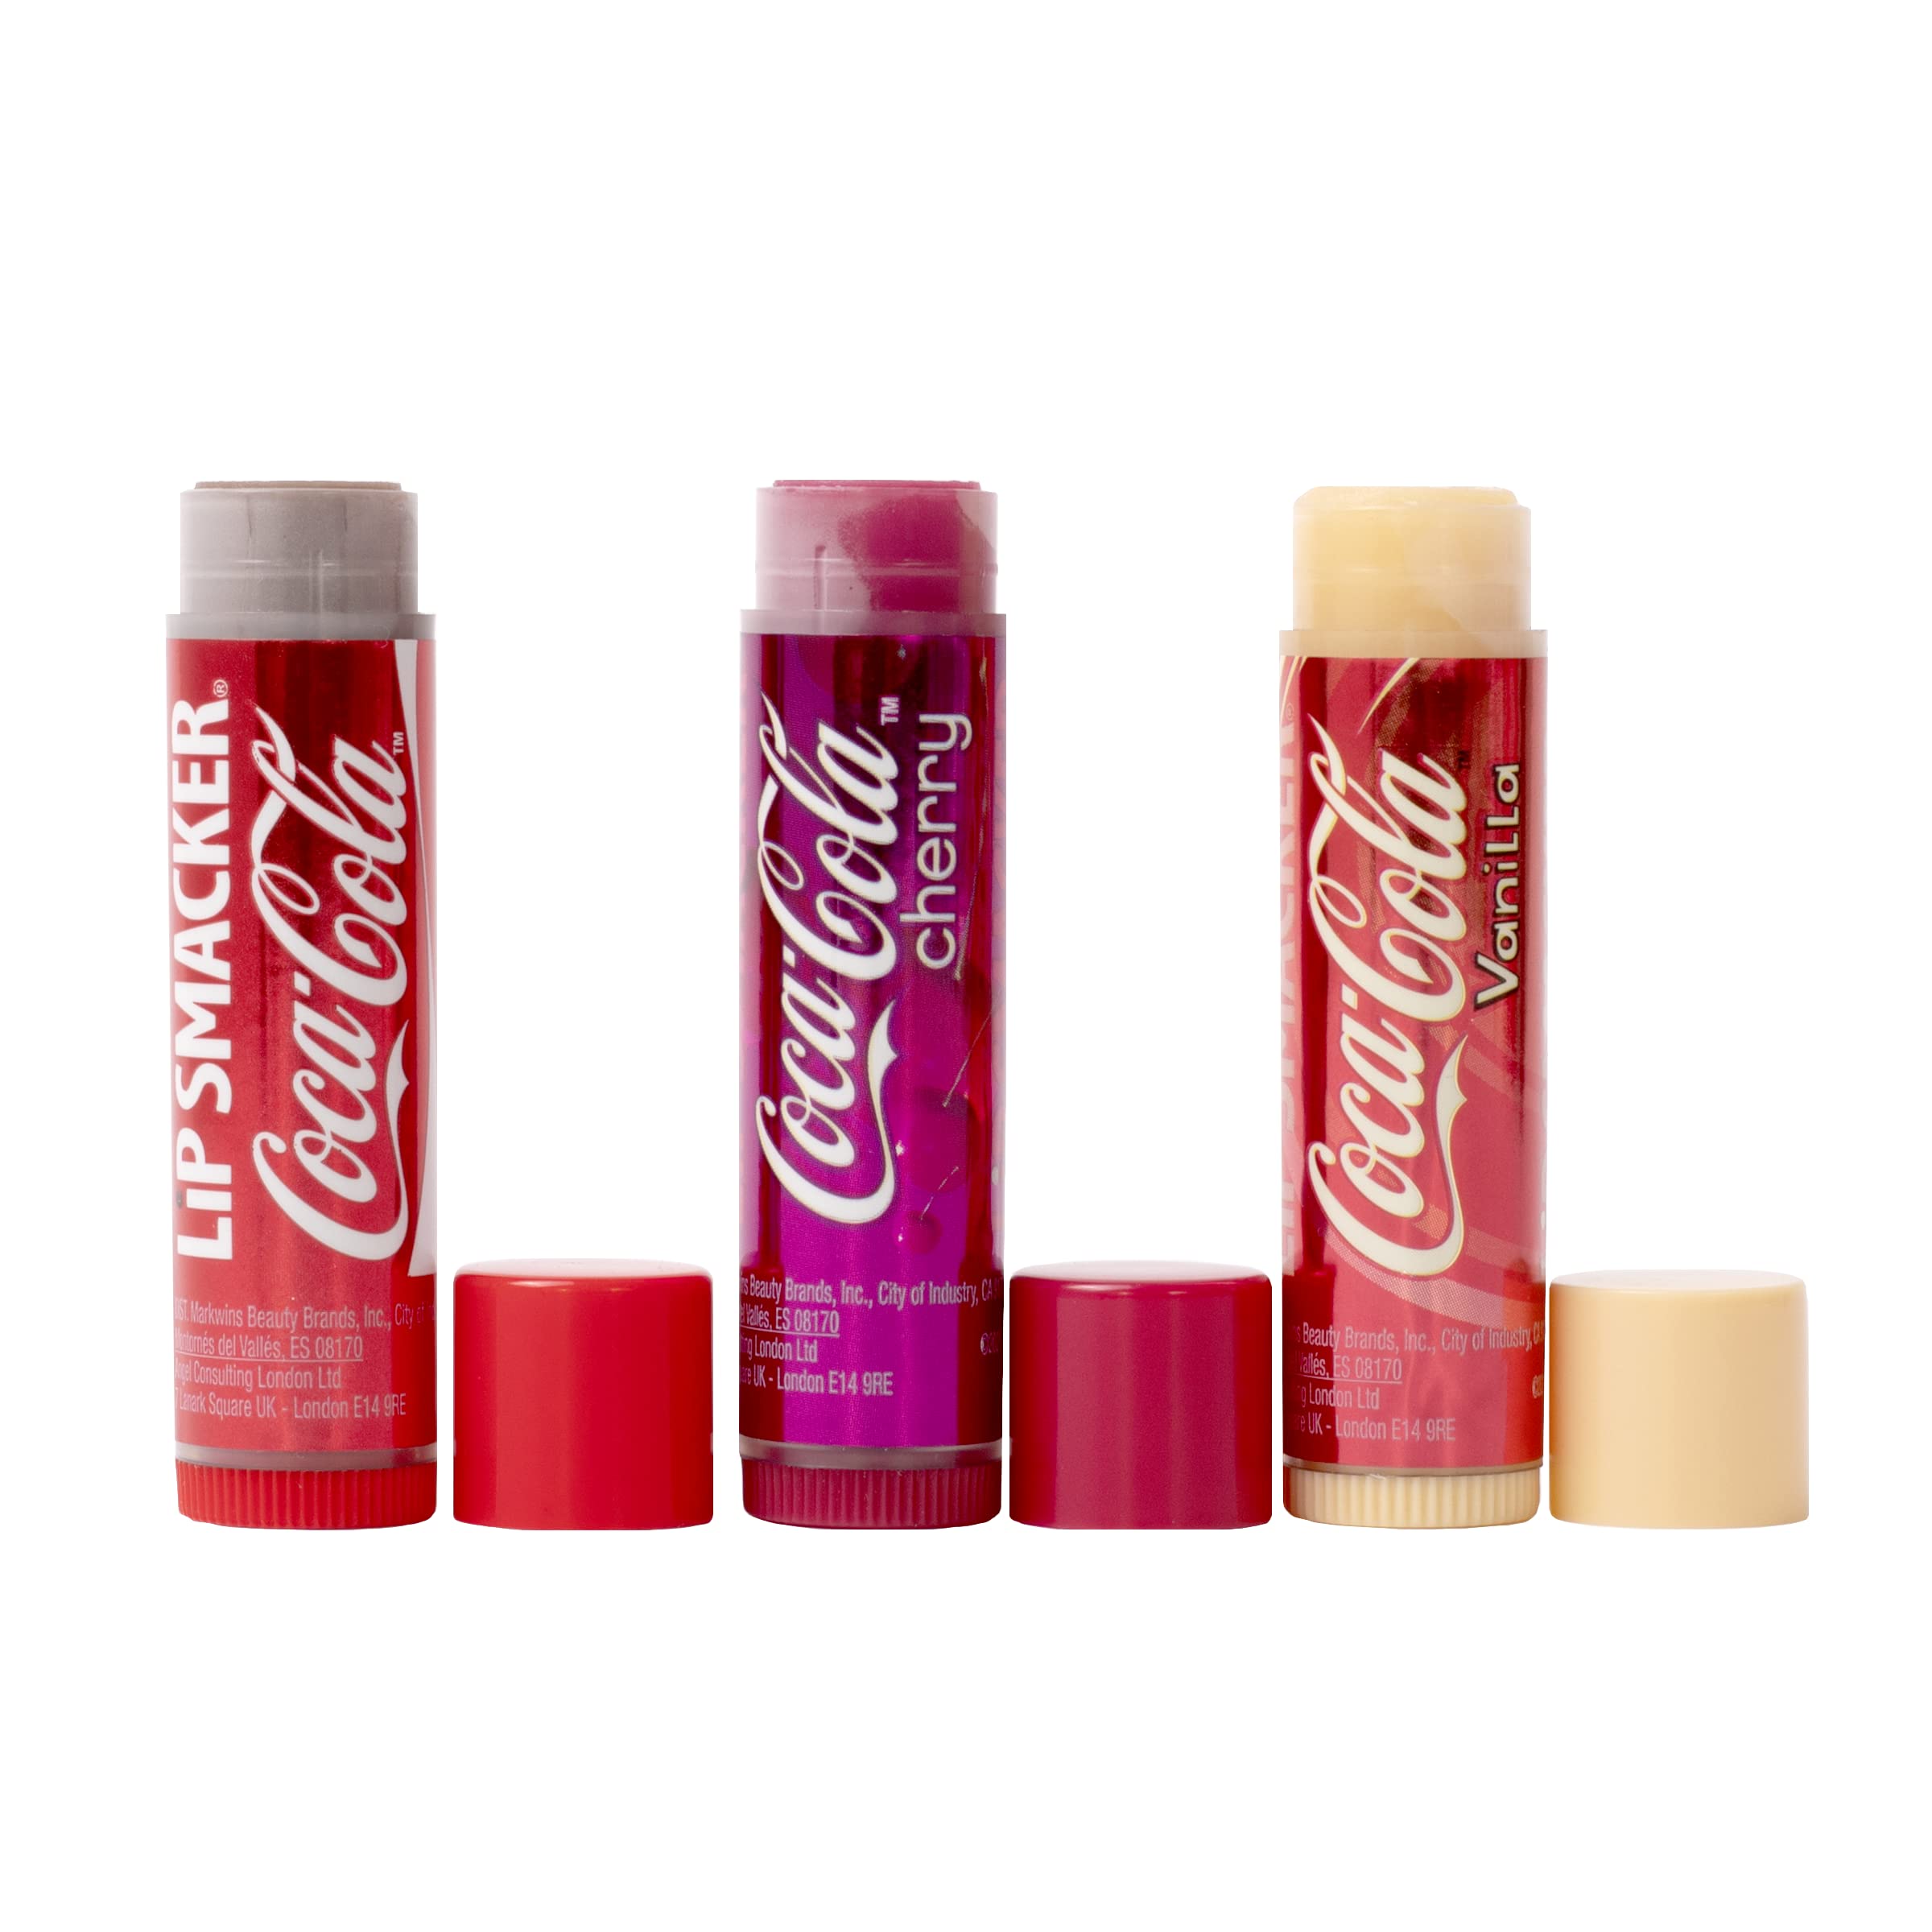 3-piece Lip Smacker Coca Cola Trio Lip Balm Set (Original Coca Cola, Cherry, Vanilla) $2.98 w/ S&S + Free Shipping w/ Prime or on $25+